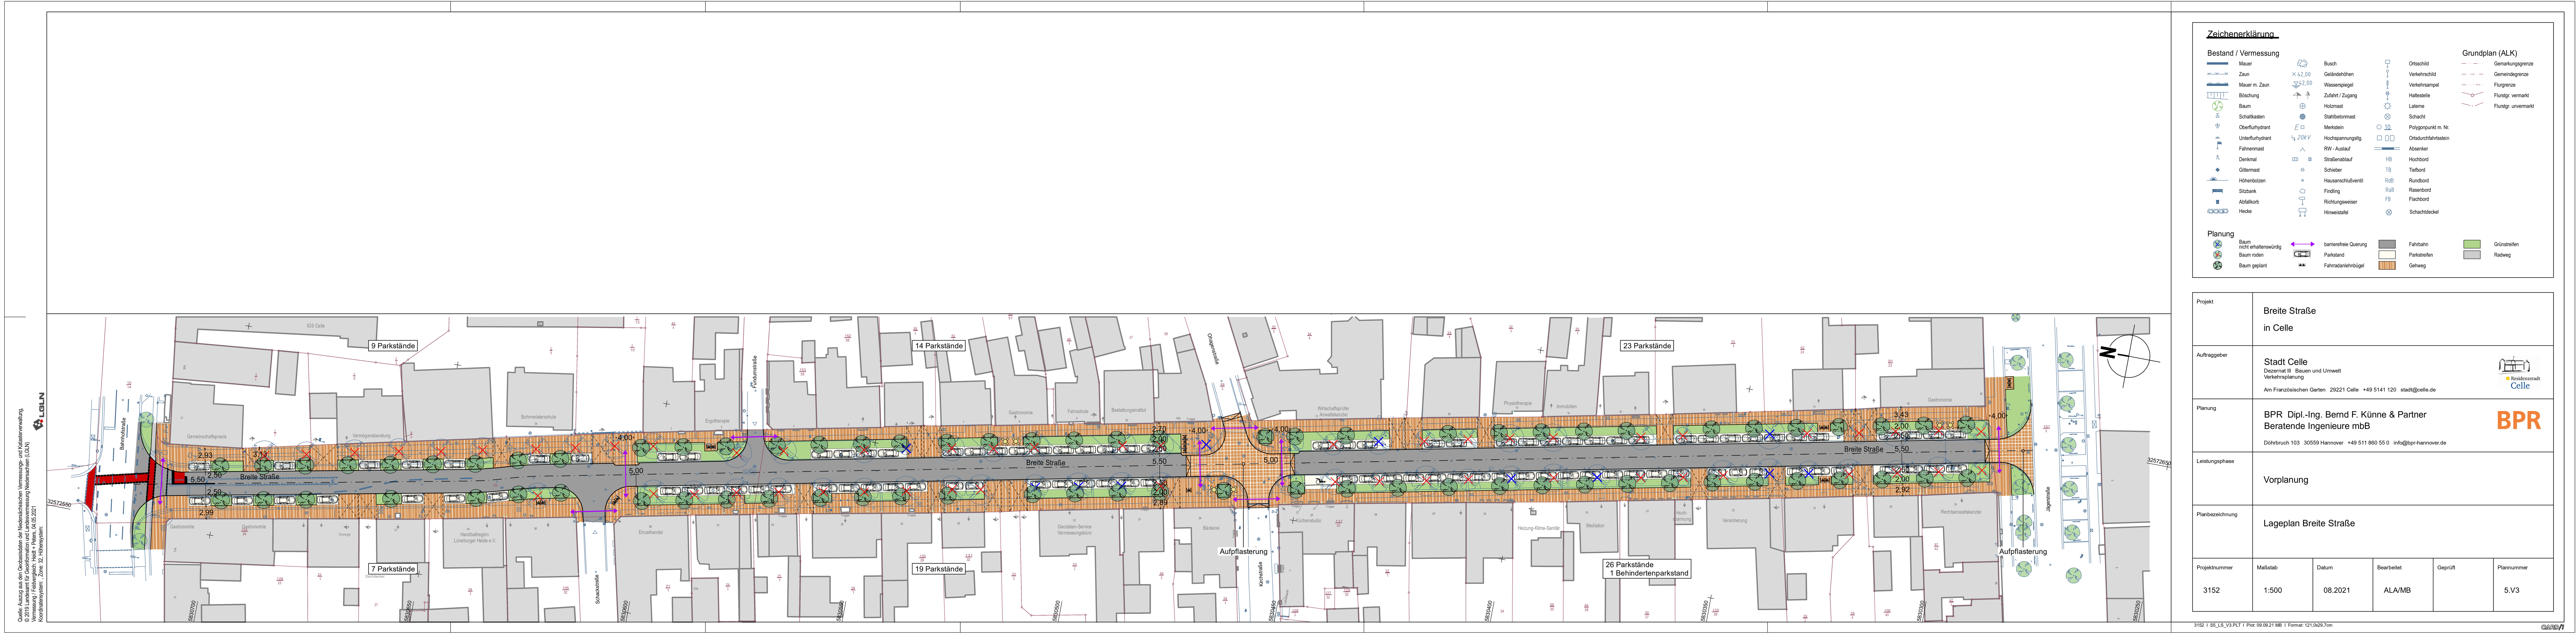 Der Plan zeigt den Lageplan der Variante 2 des Entwurfs für die Breite Straße.